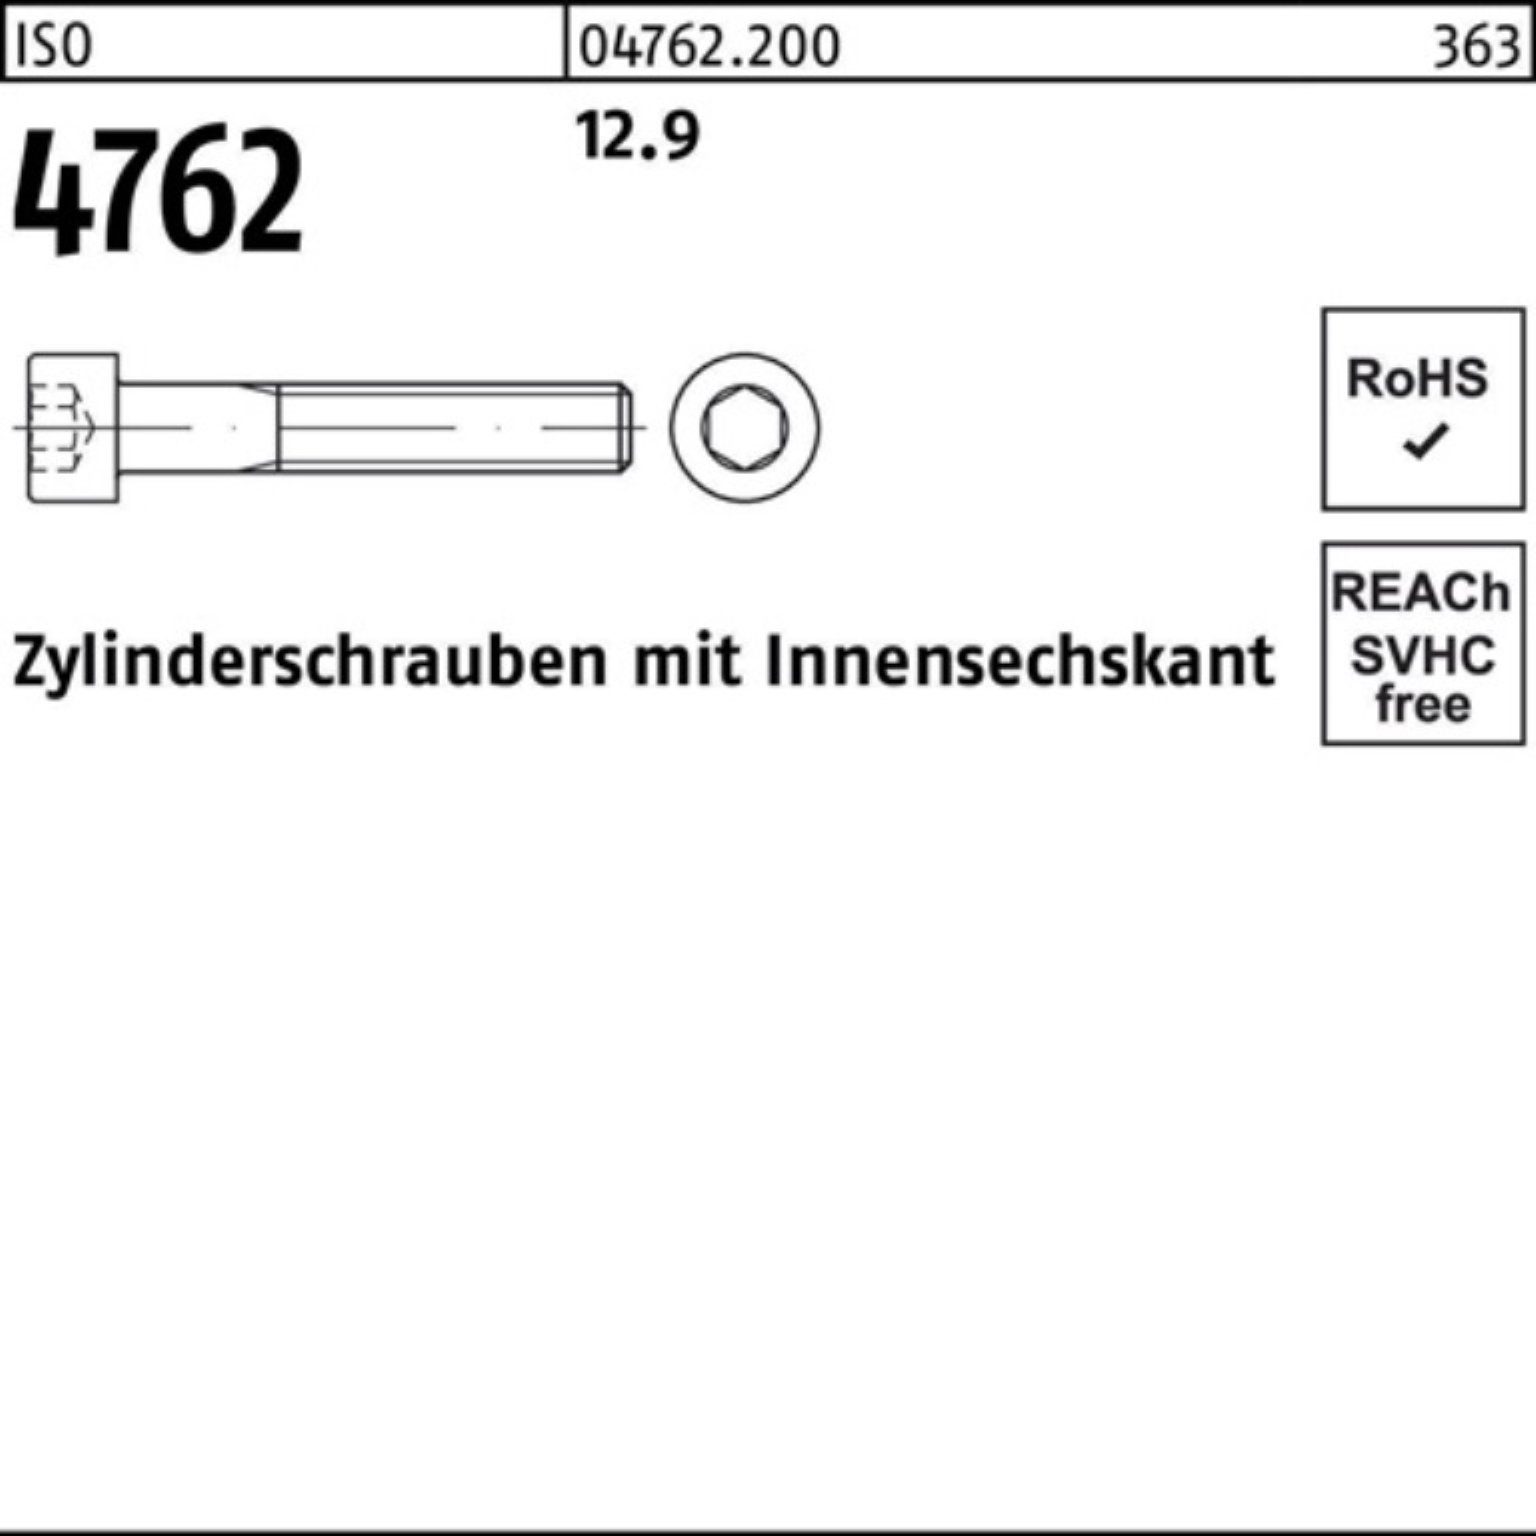 M5x Zylinderschraube Reyher 12.9 Pack Innen-6kt Zylinderschraube 20 500er 500 Stück 4762 ISO